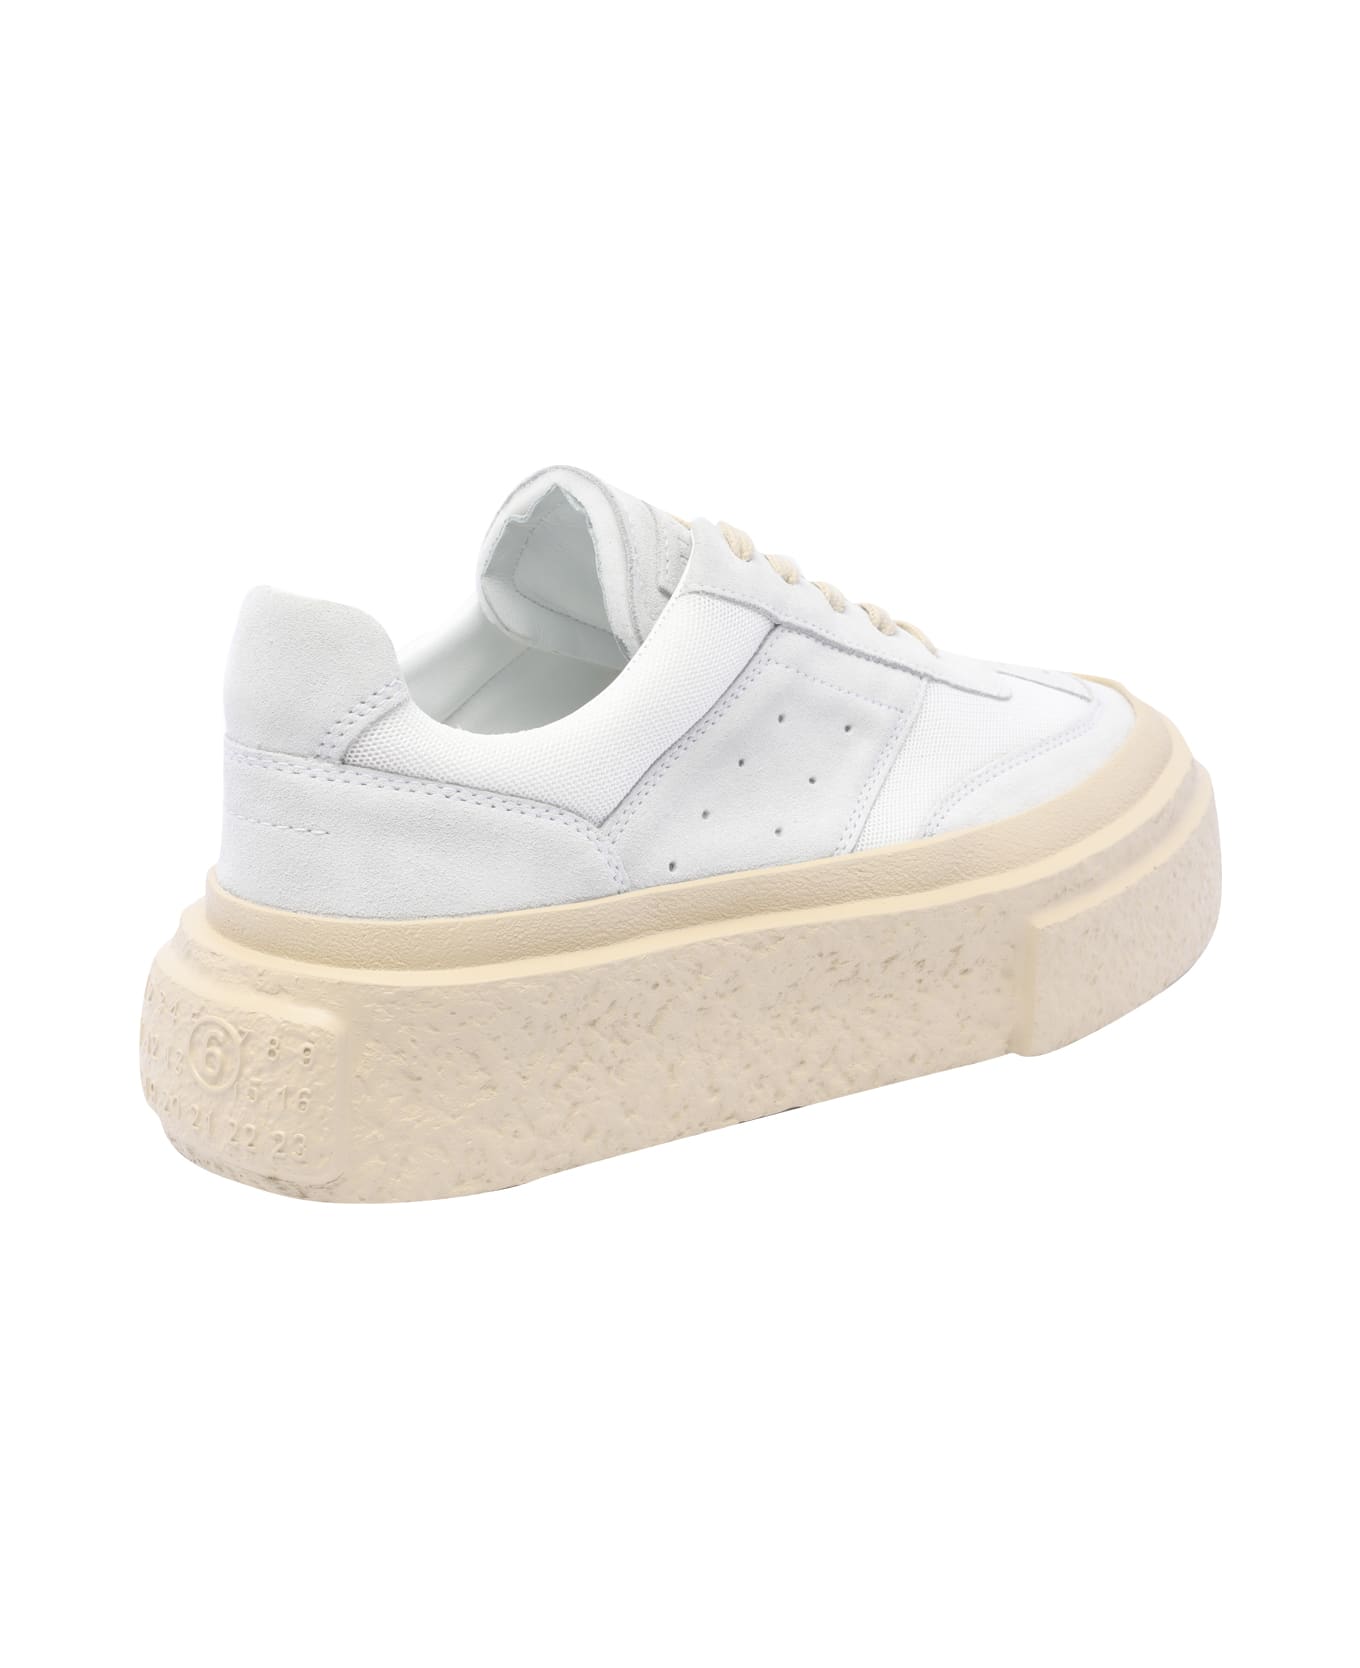 MM6 Maison Margiela Gambetta Sneakers - White